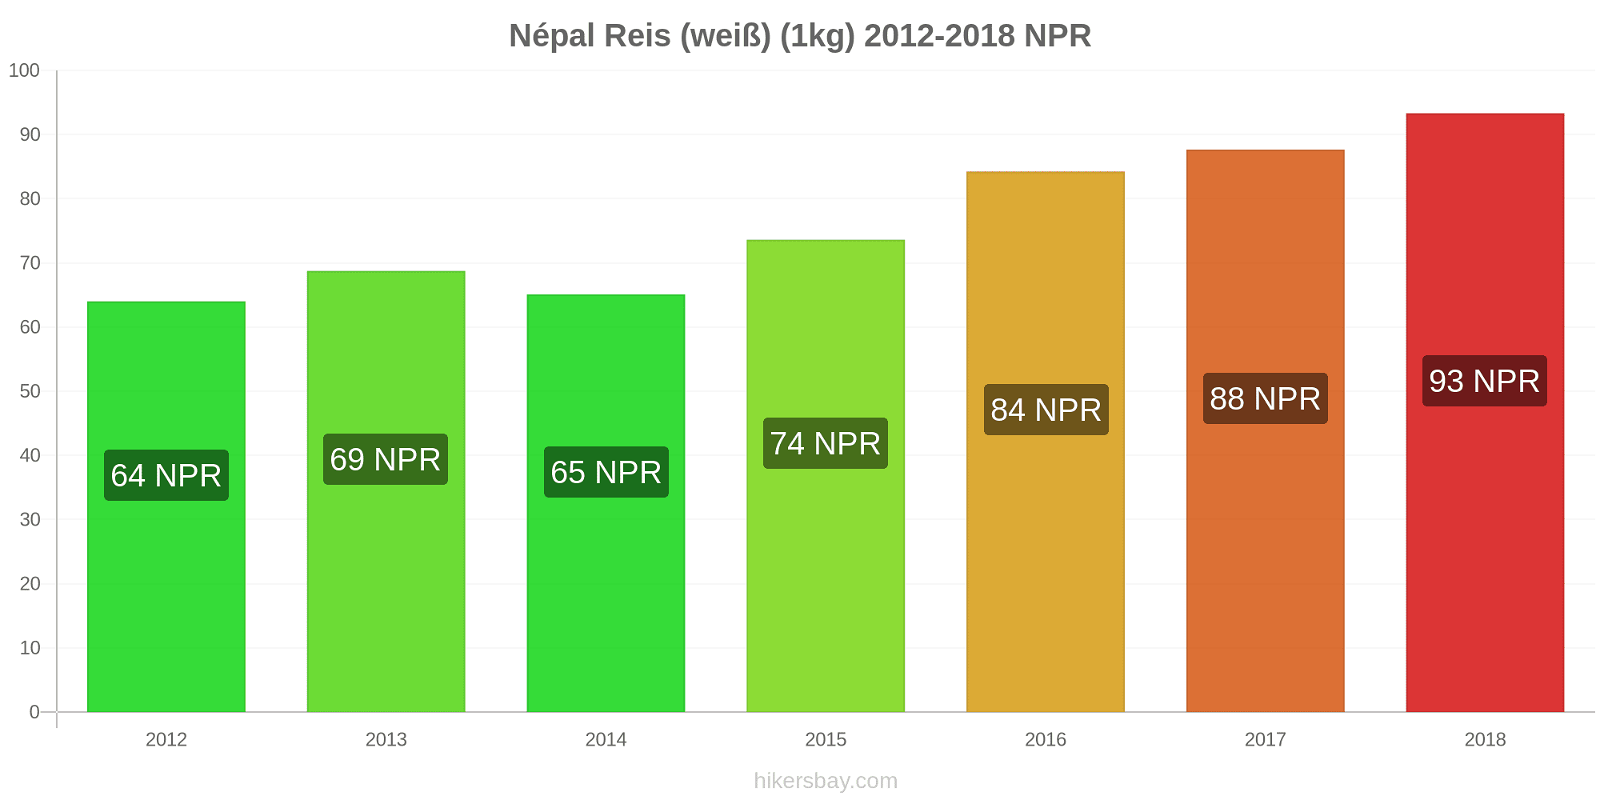 Népal Preisänderungen Reis (weiß) (1kg) hikersbay.com